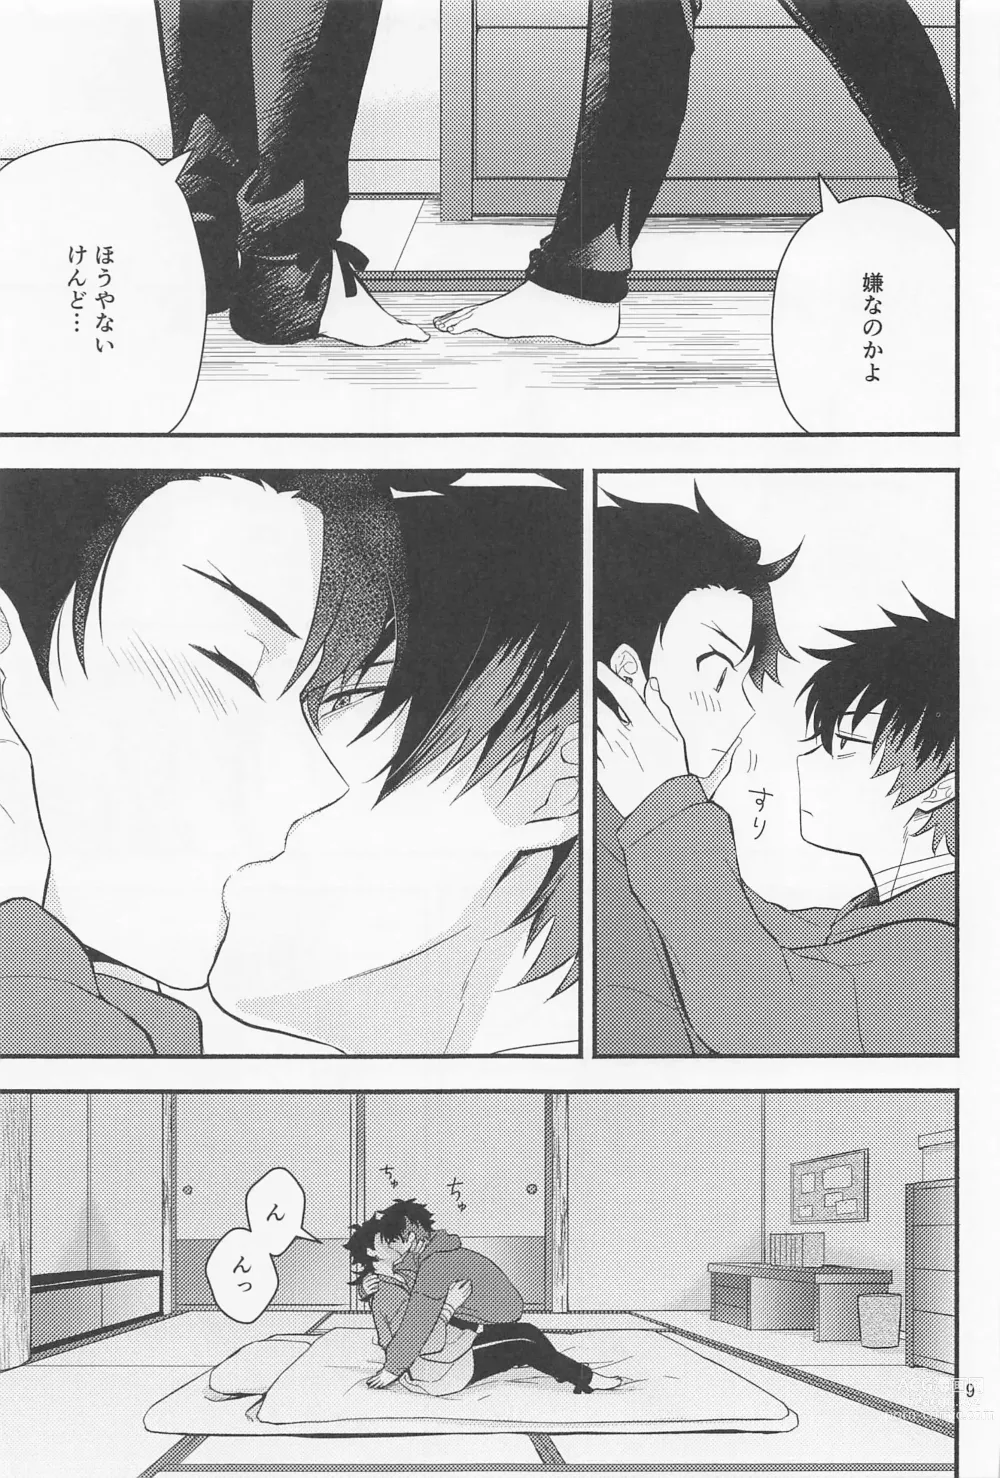 Page 7 of doujinshi Nawabari